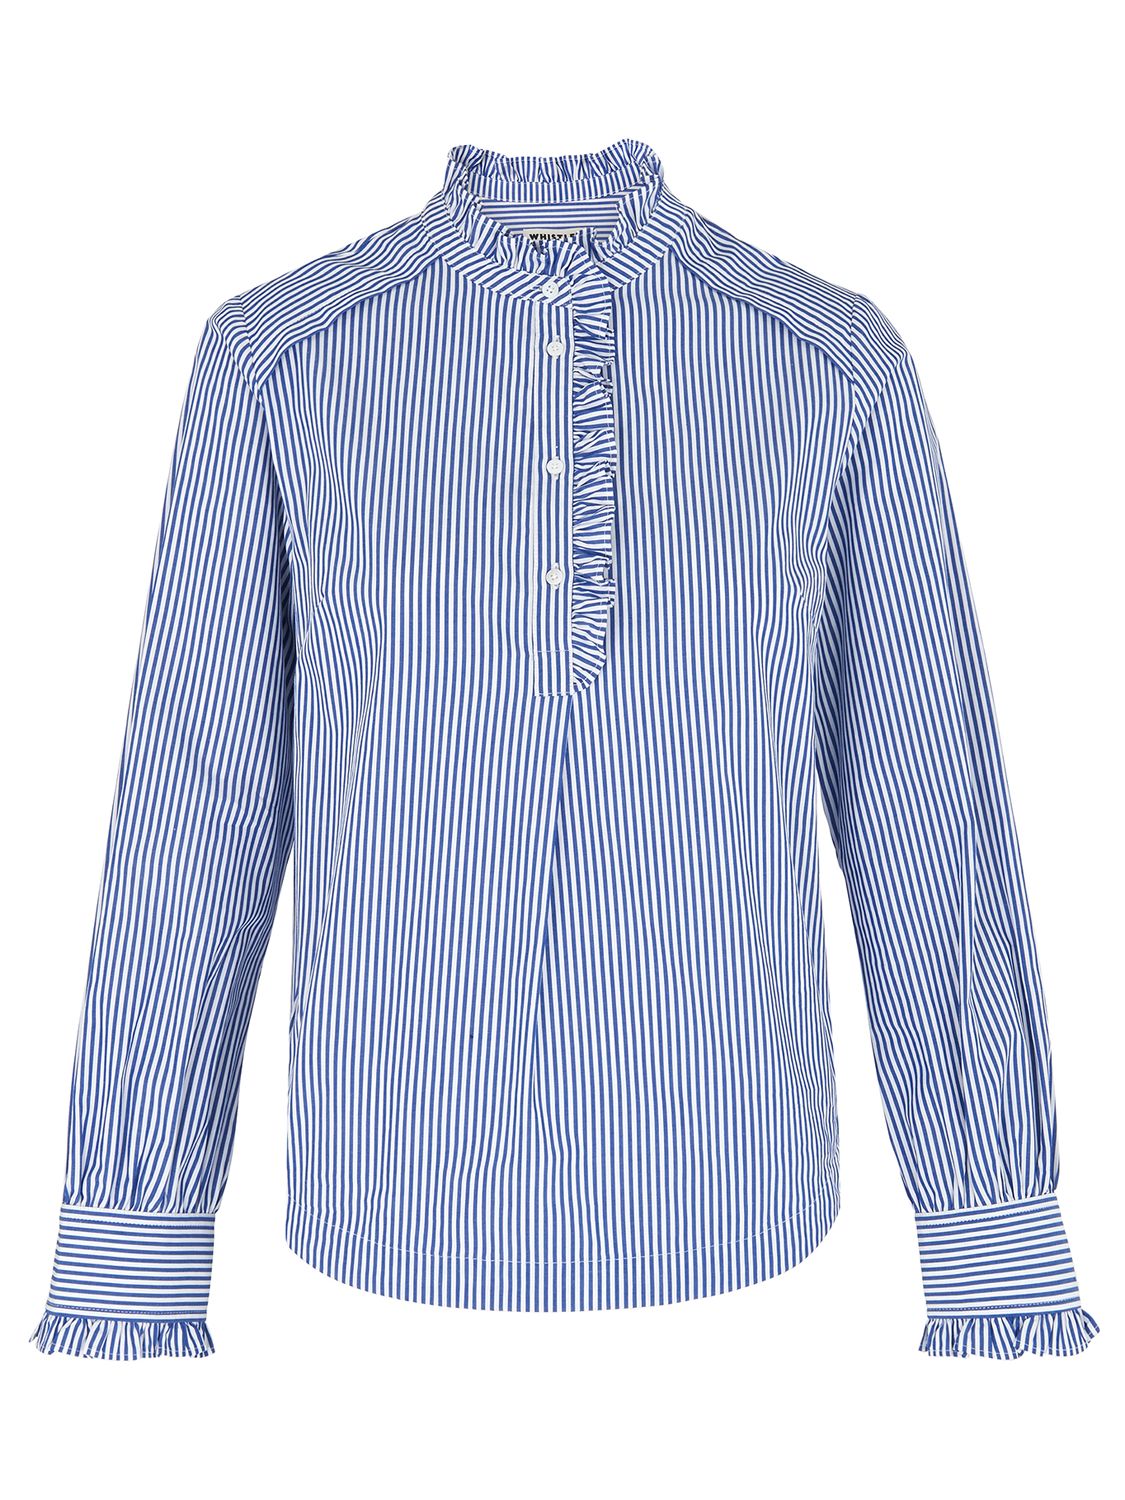 Whistles Ruffle Detail Stripe Shirt, Blue/White at John Lewis & Partners